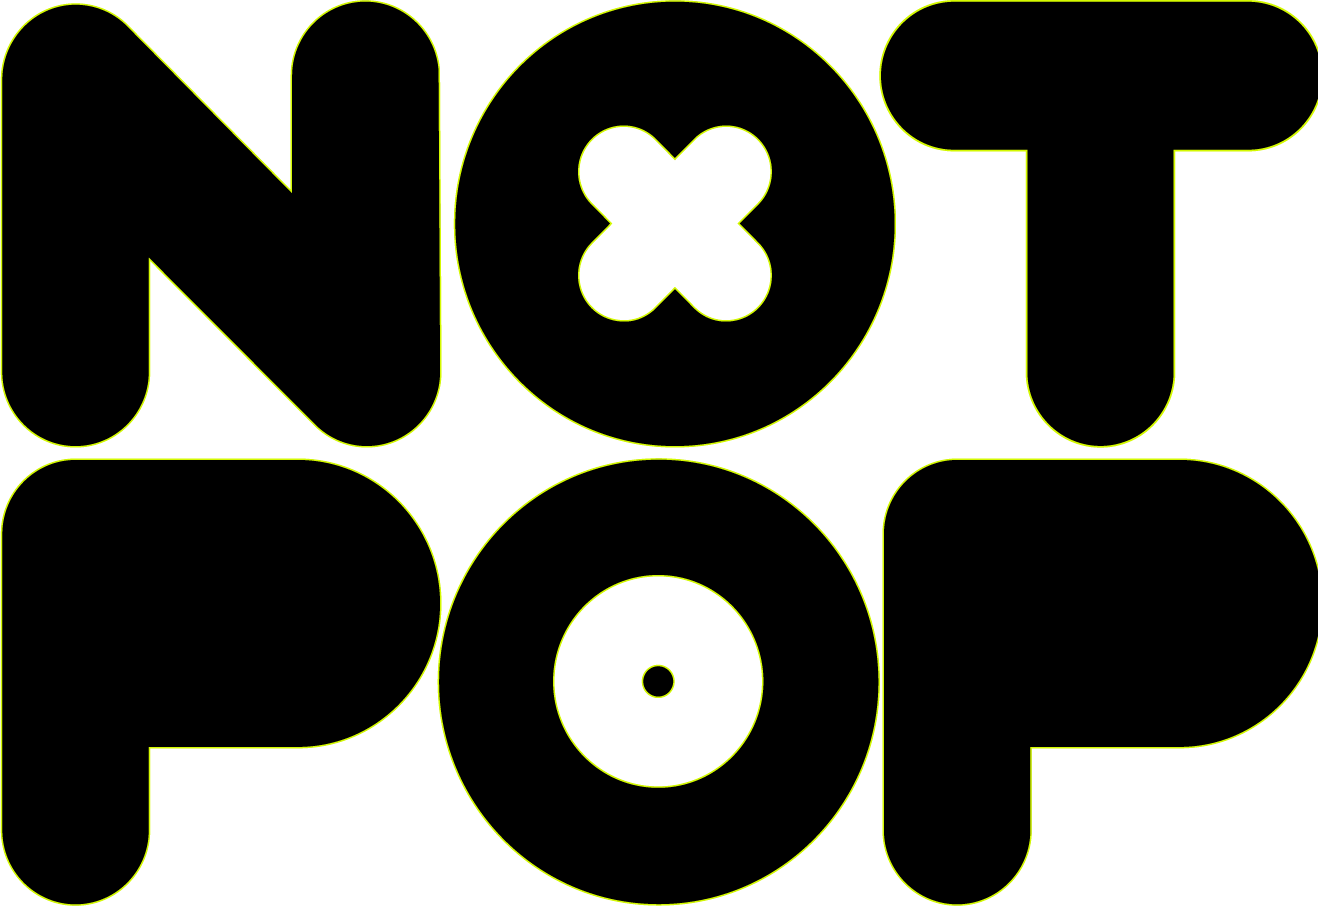 NOT POP